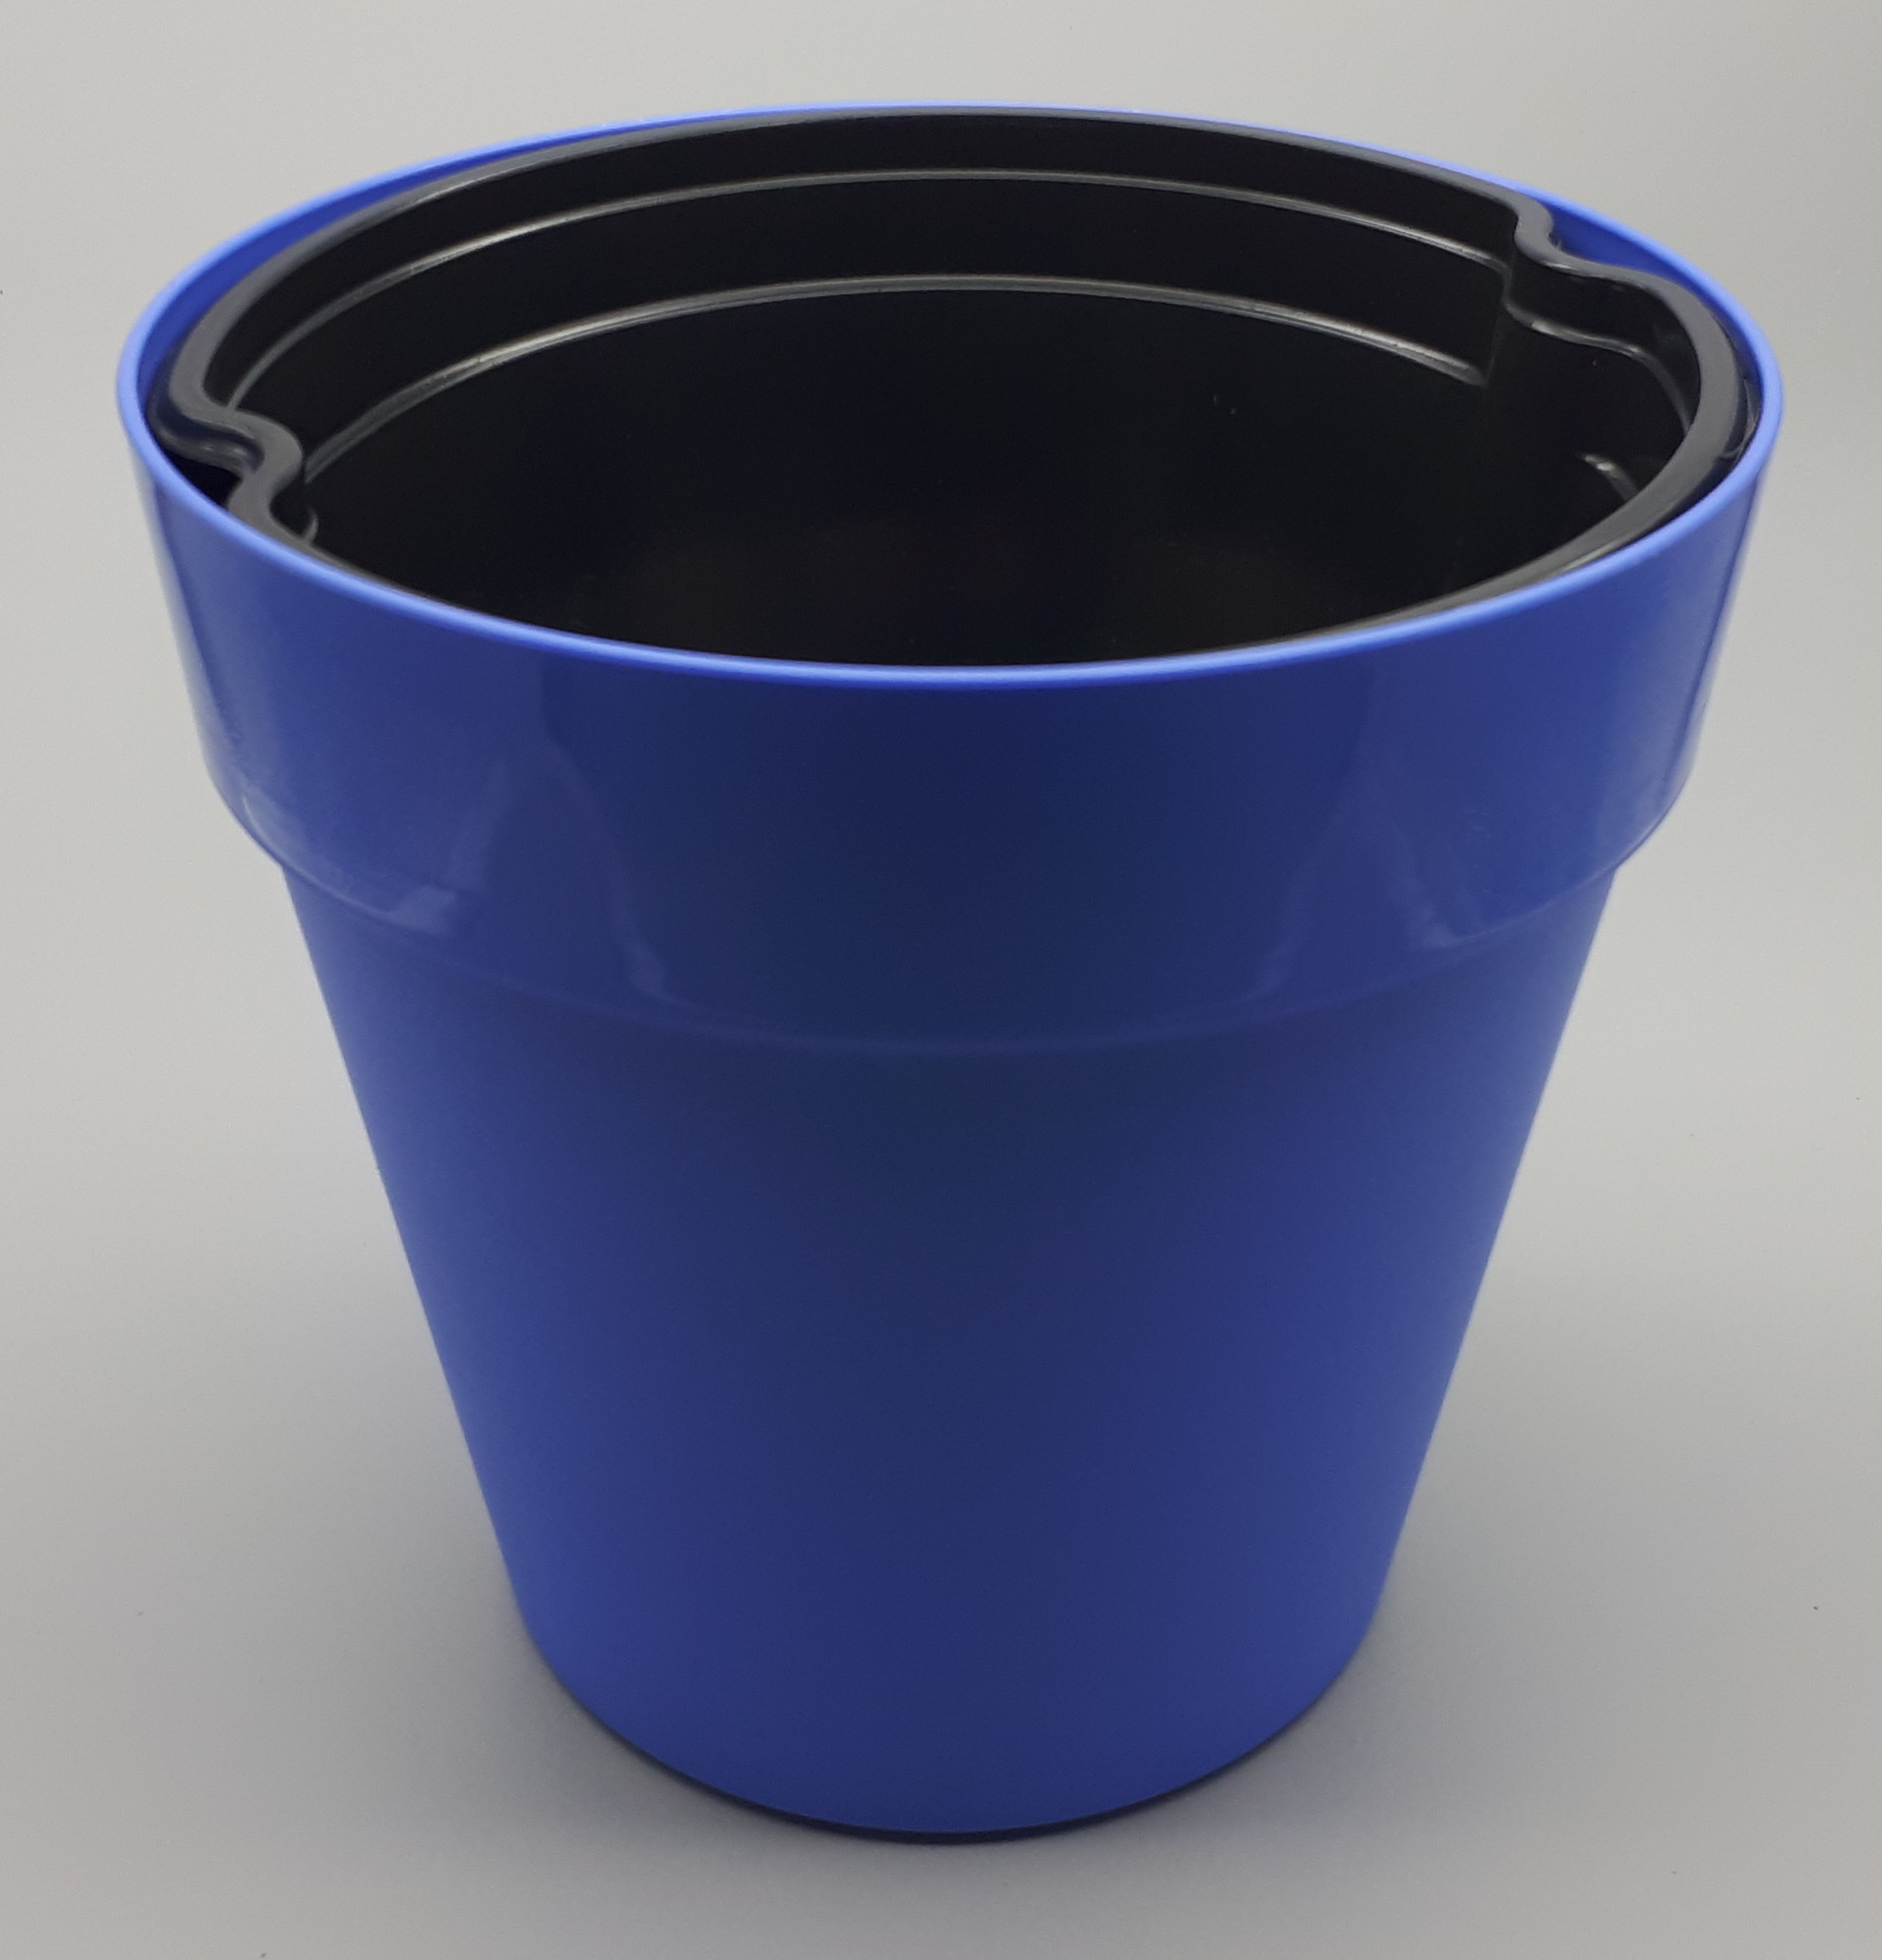 Decor pot blue 28